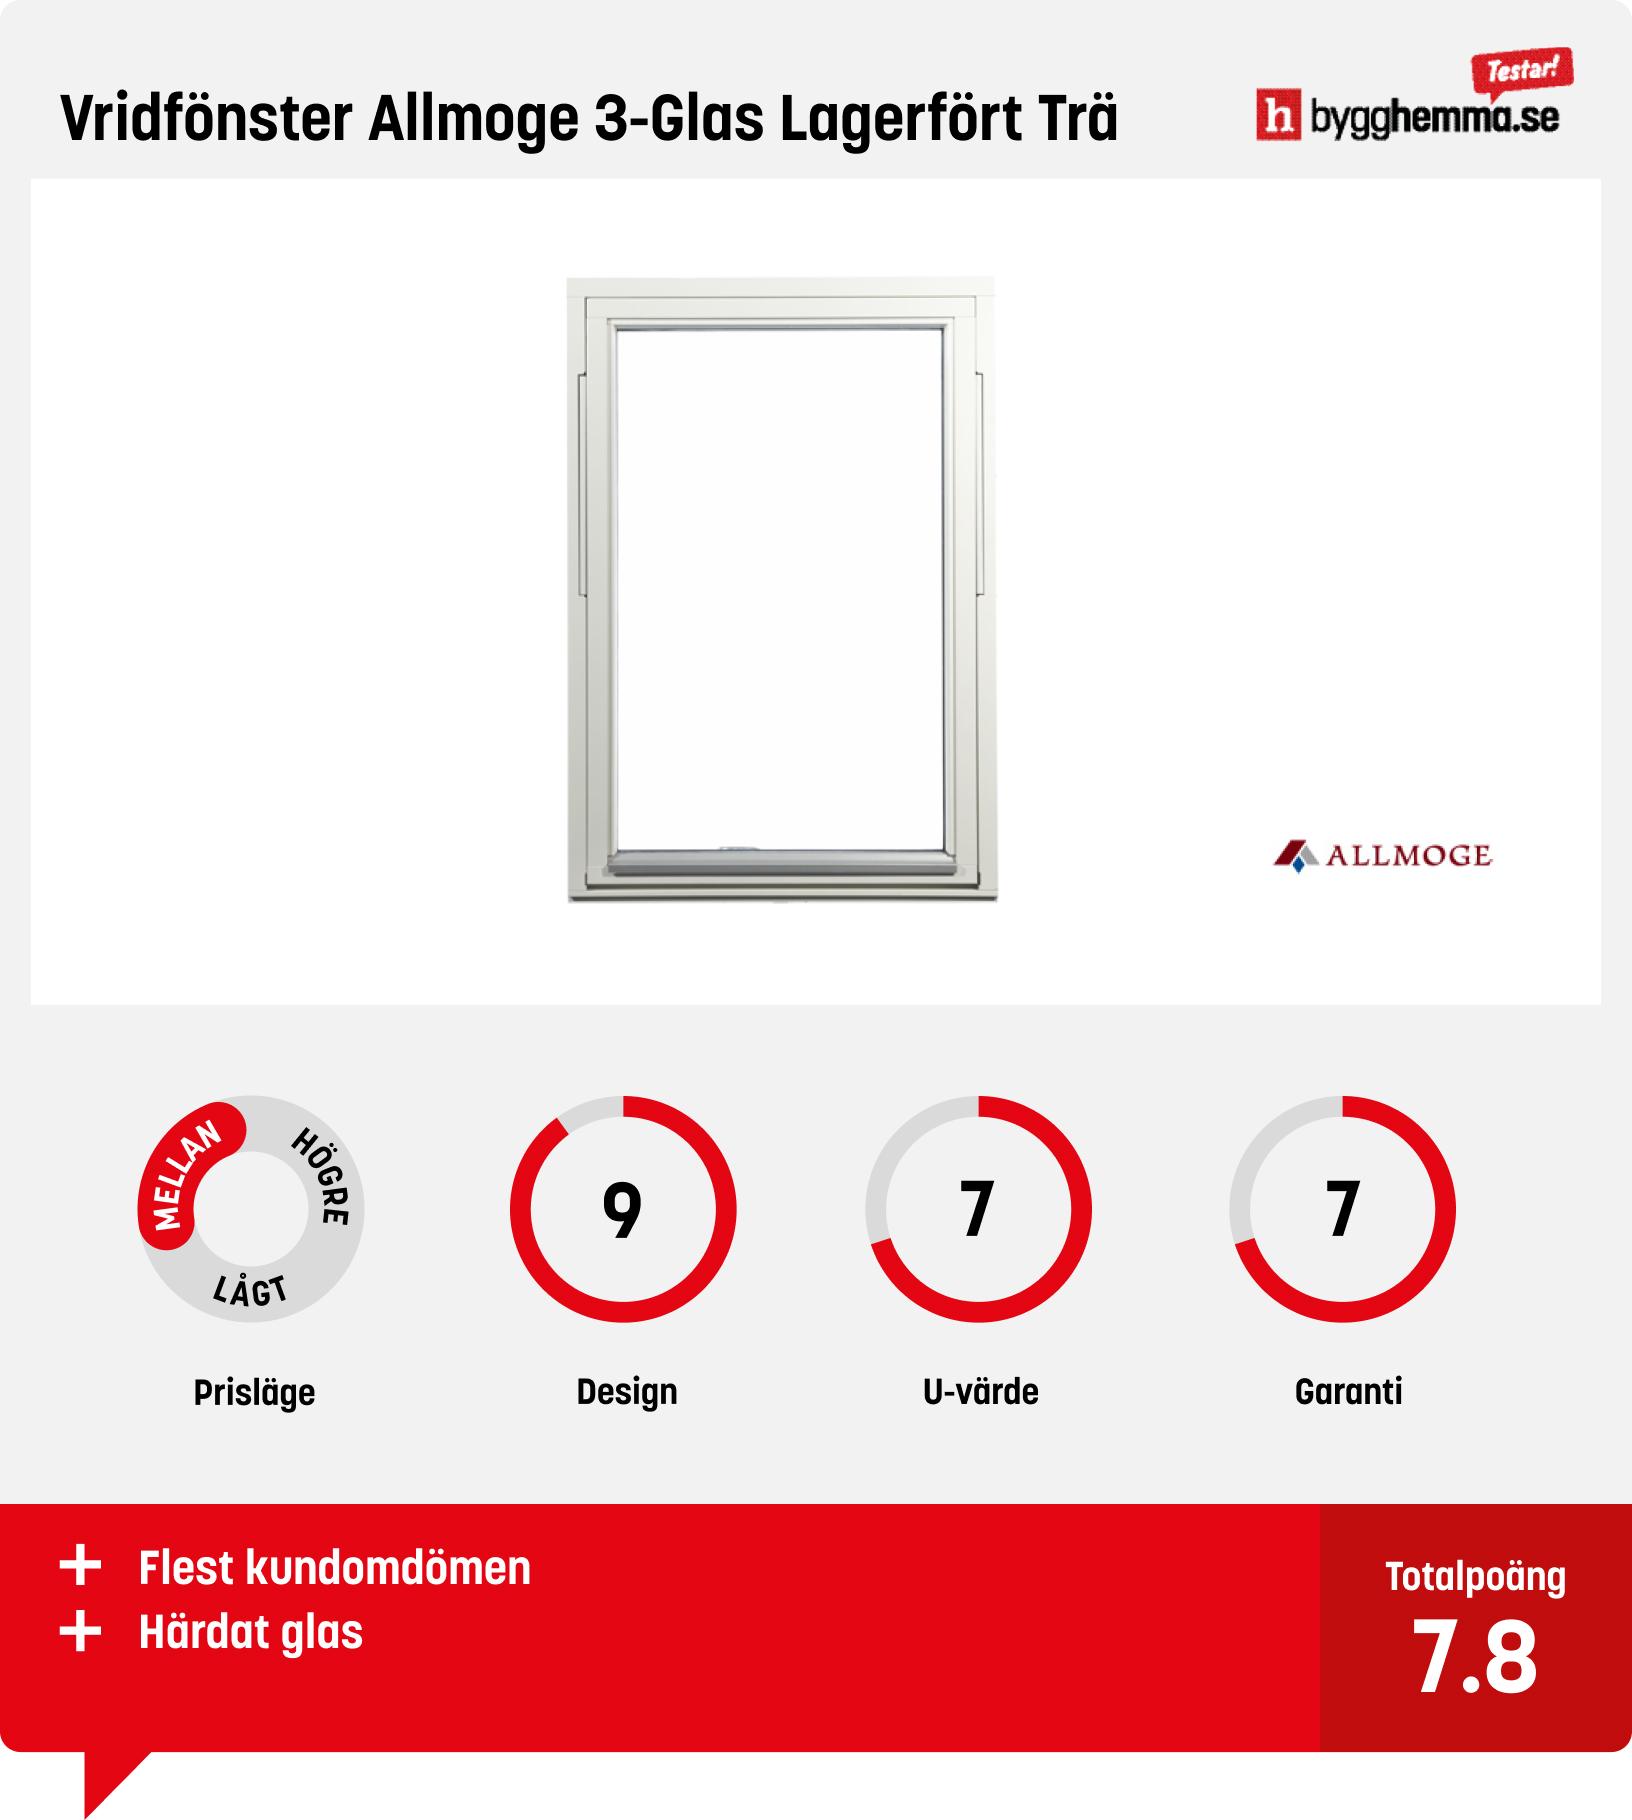 Fönster bäst i test - Vridfönster Allmoge 3-Glas Lagerfört Trä